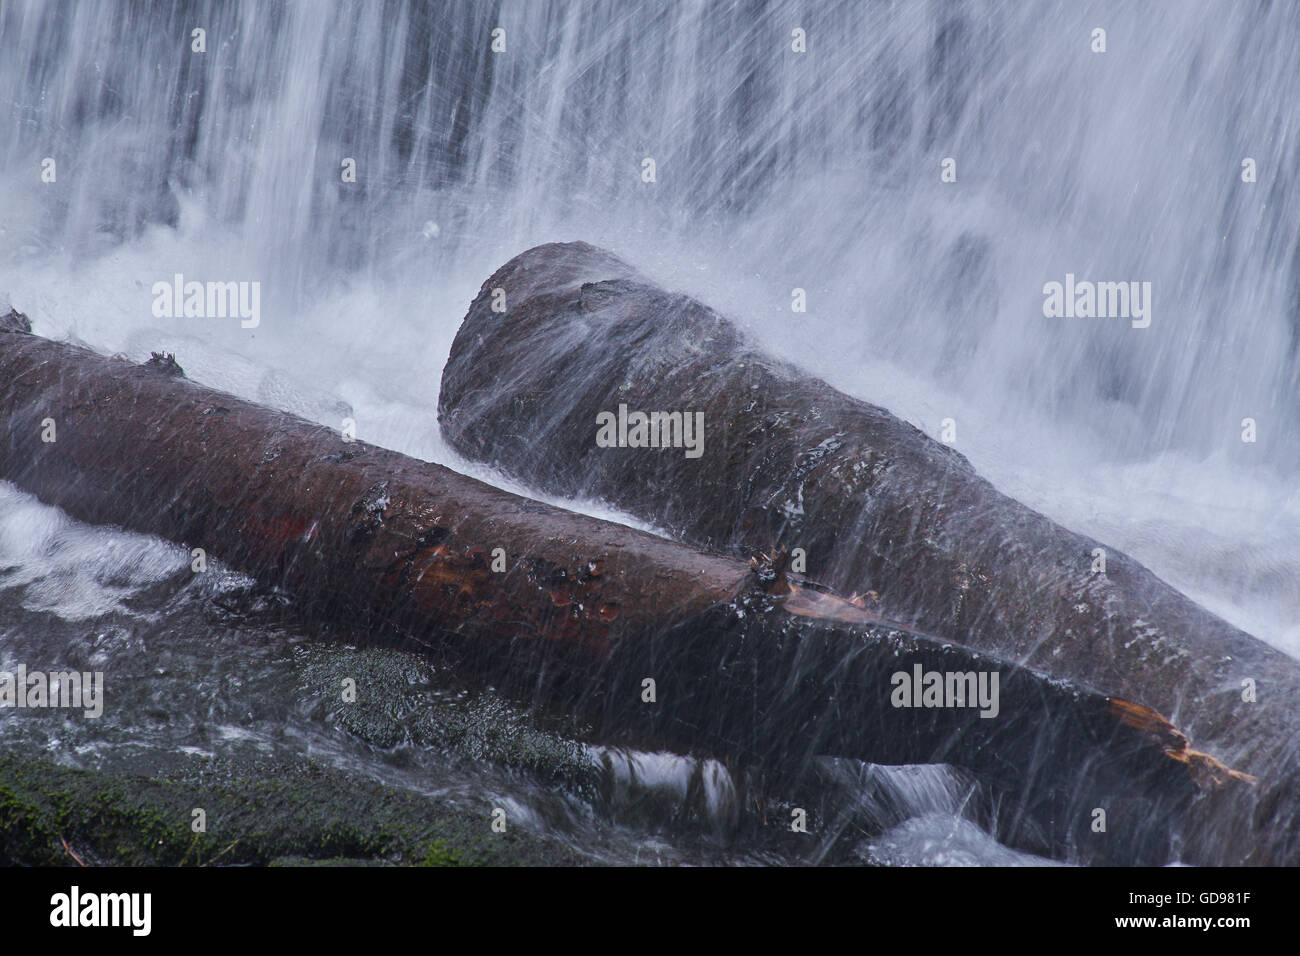 Foamed water falling on tree trunks Stock Photo